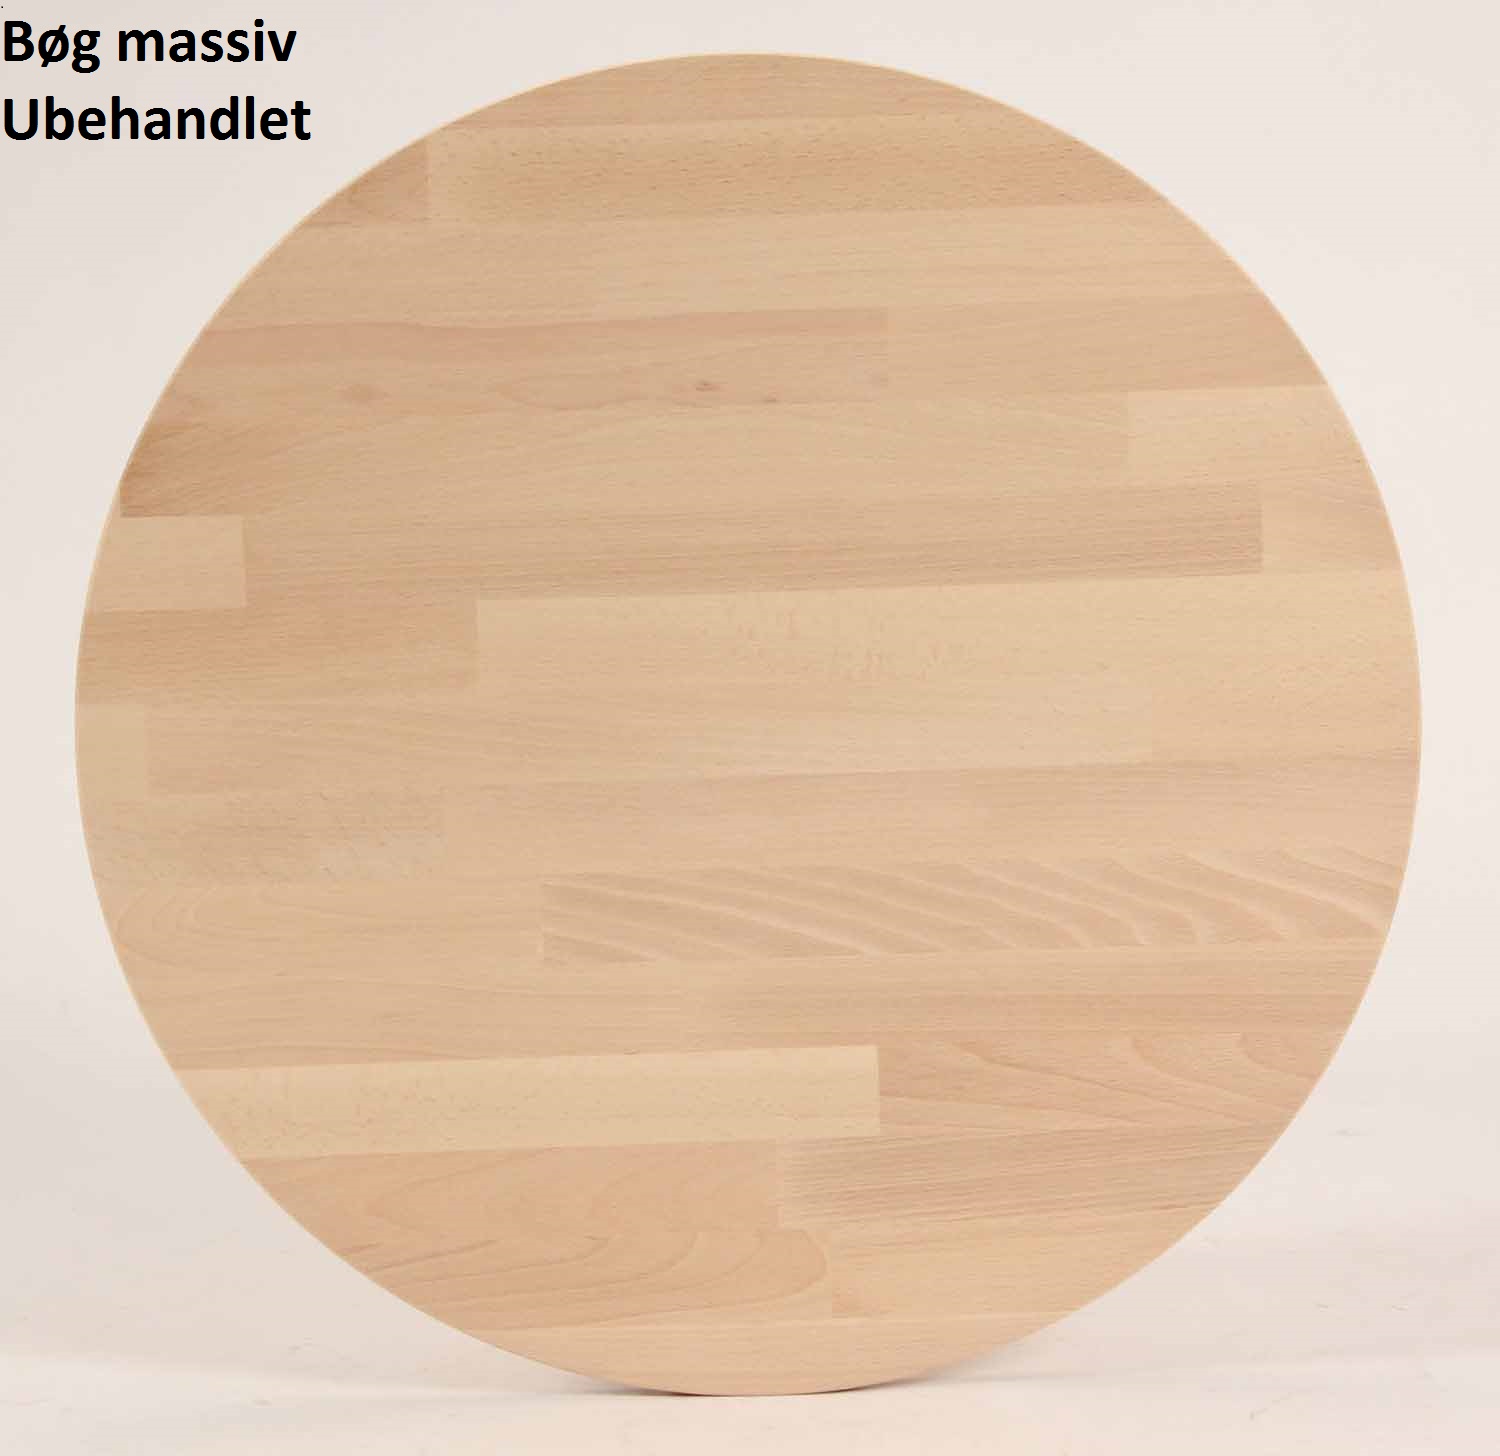 Lumber - rundt spisebord ø 100 cm, med 2 tillægsplader, massiv bøg Ubehandlet